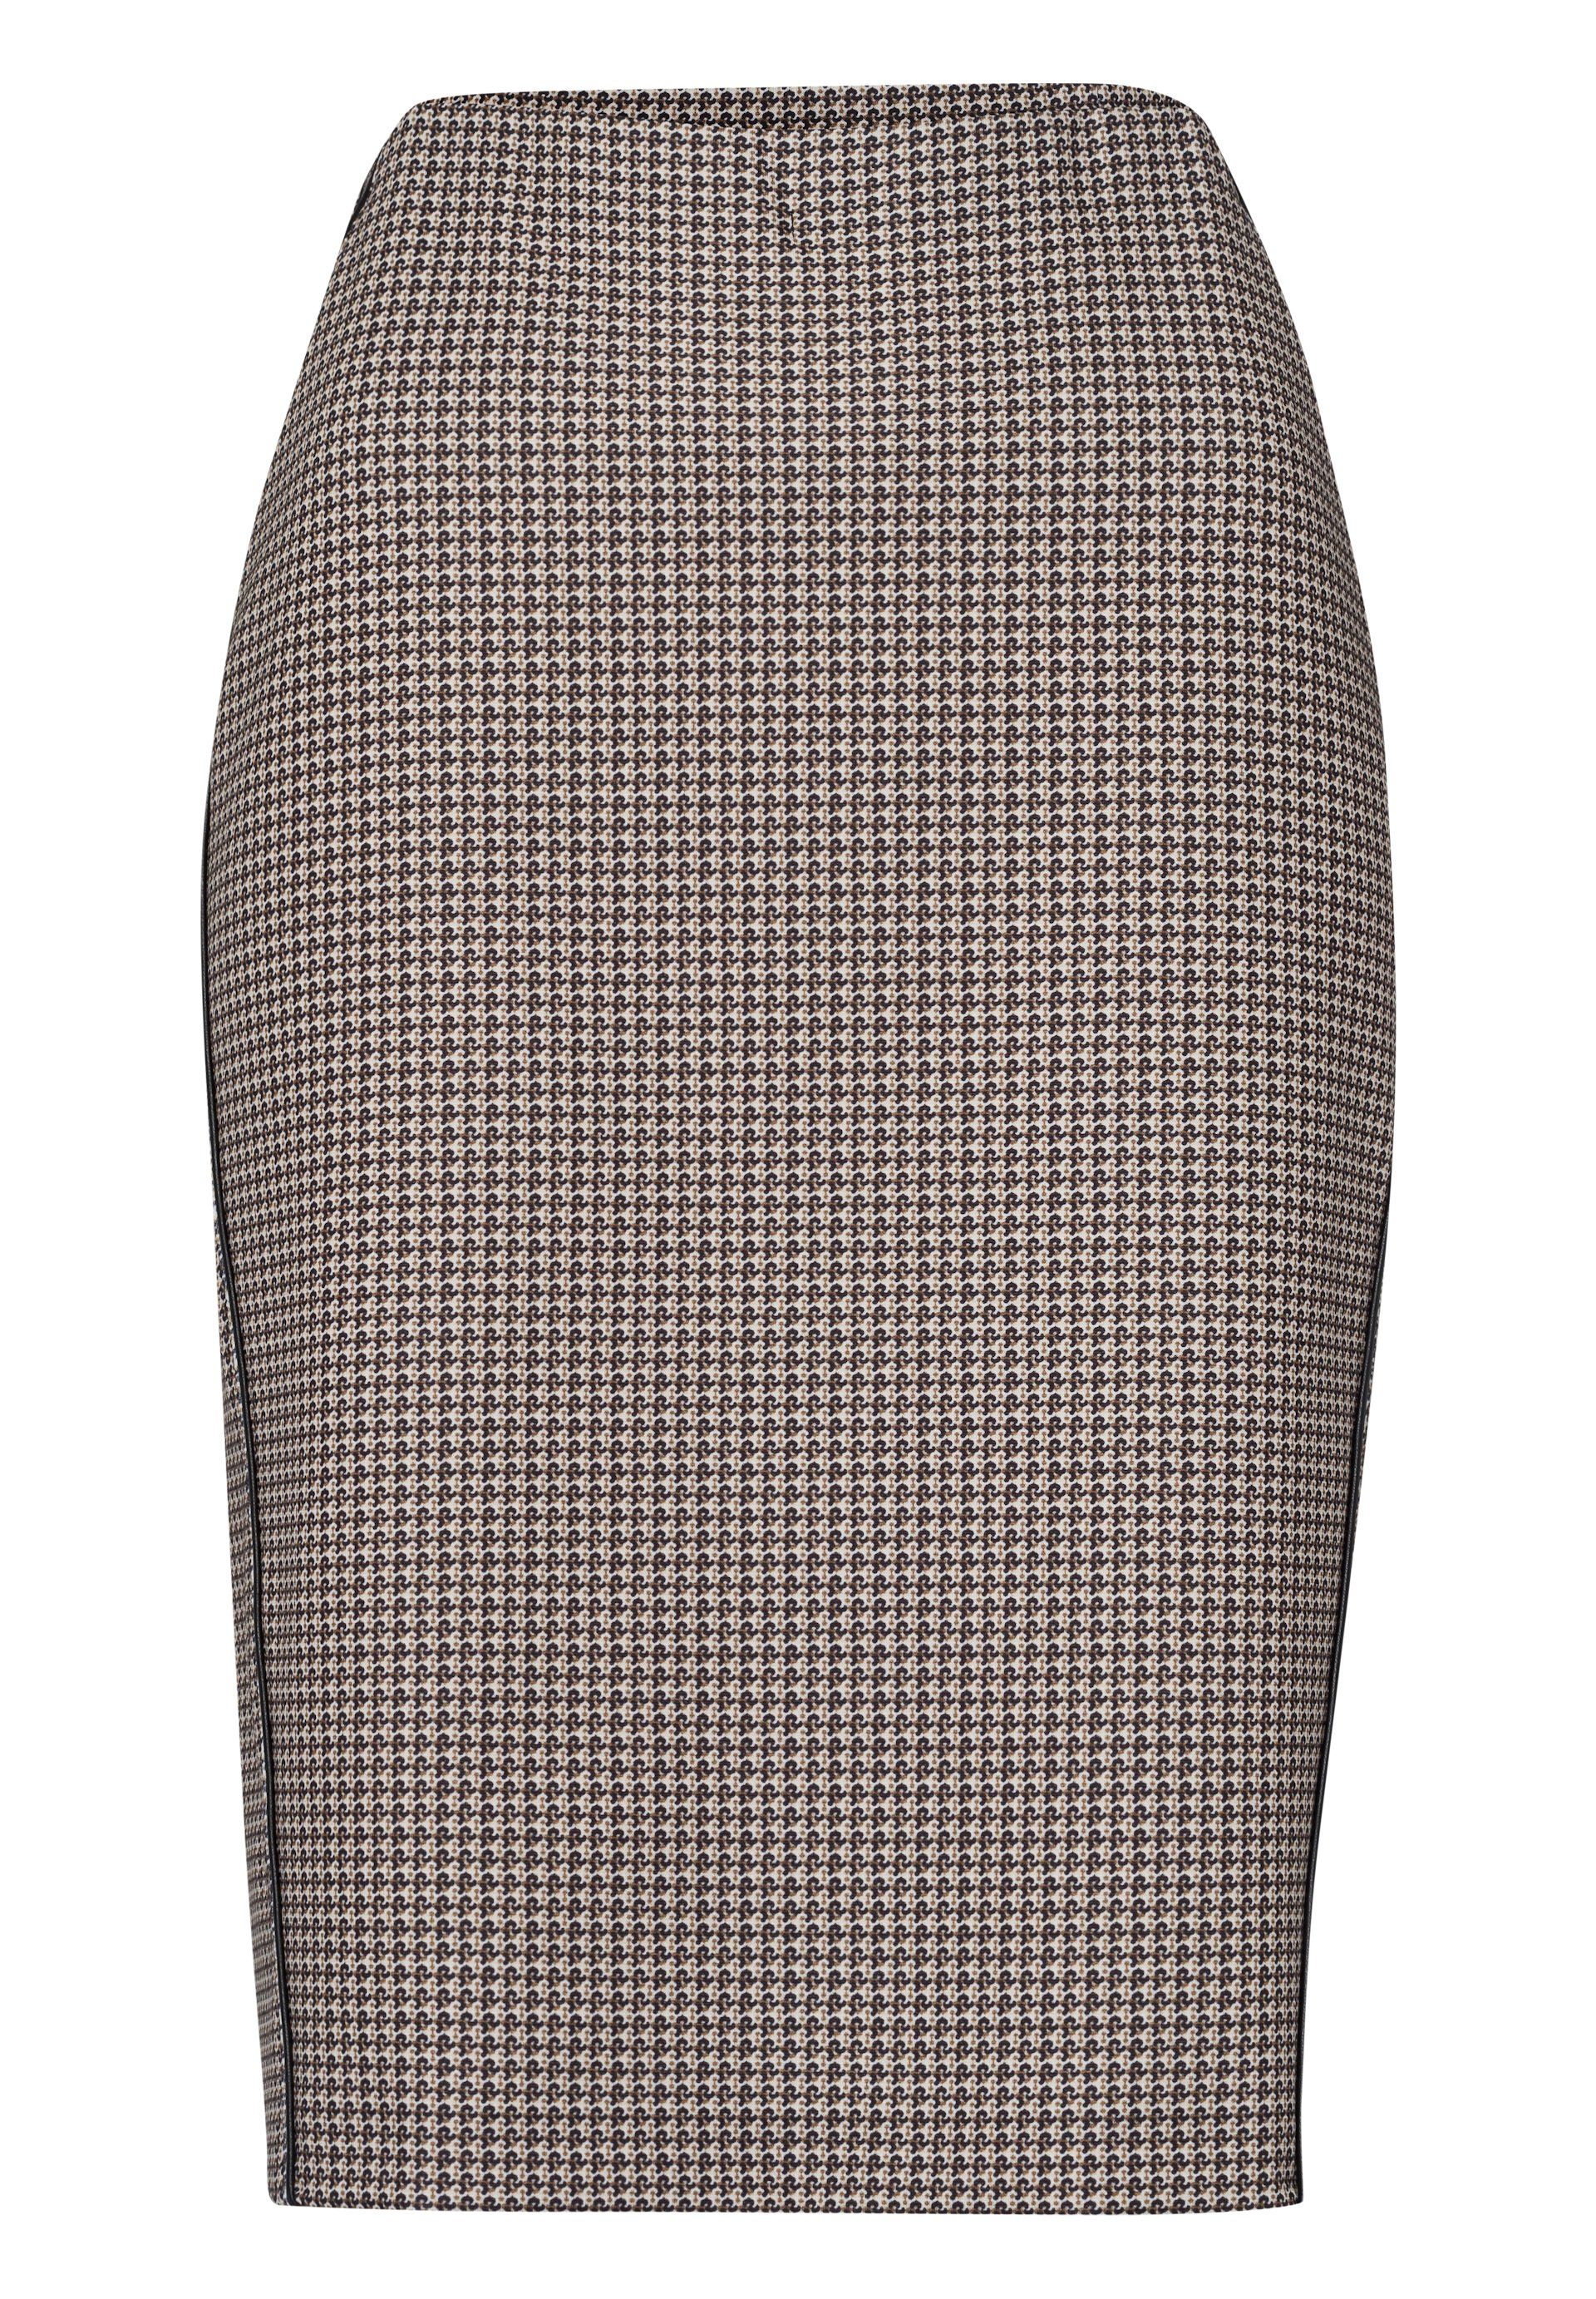 LeComte Röcke für Damen online kaufen | OTTO